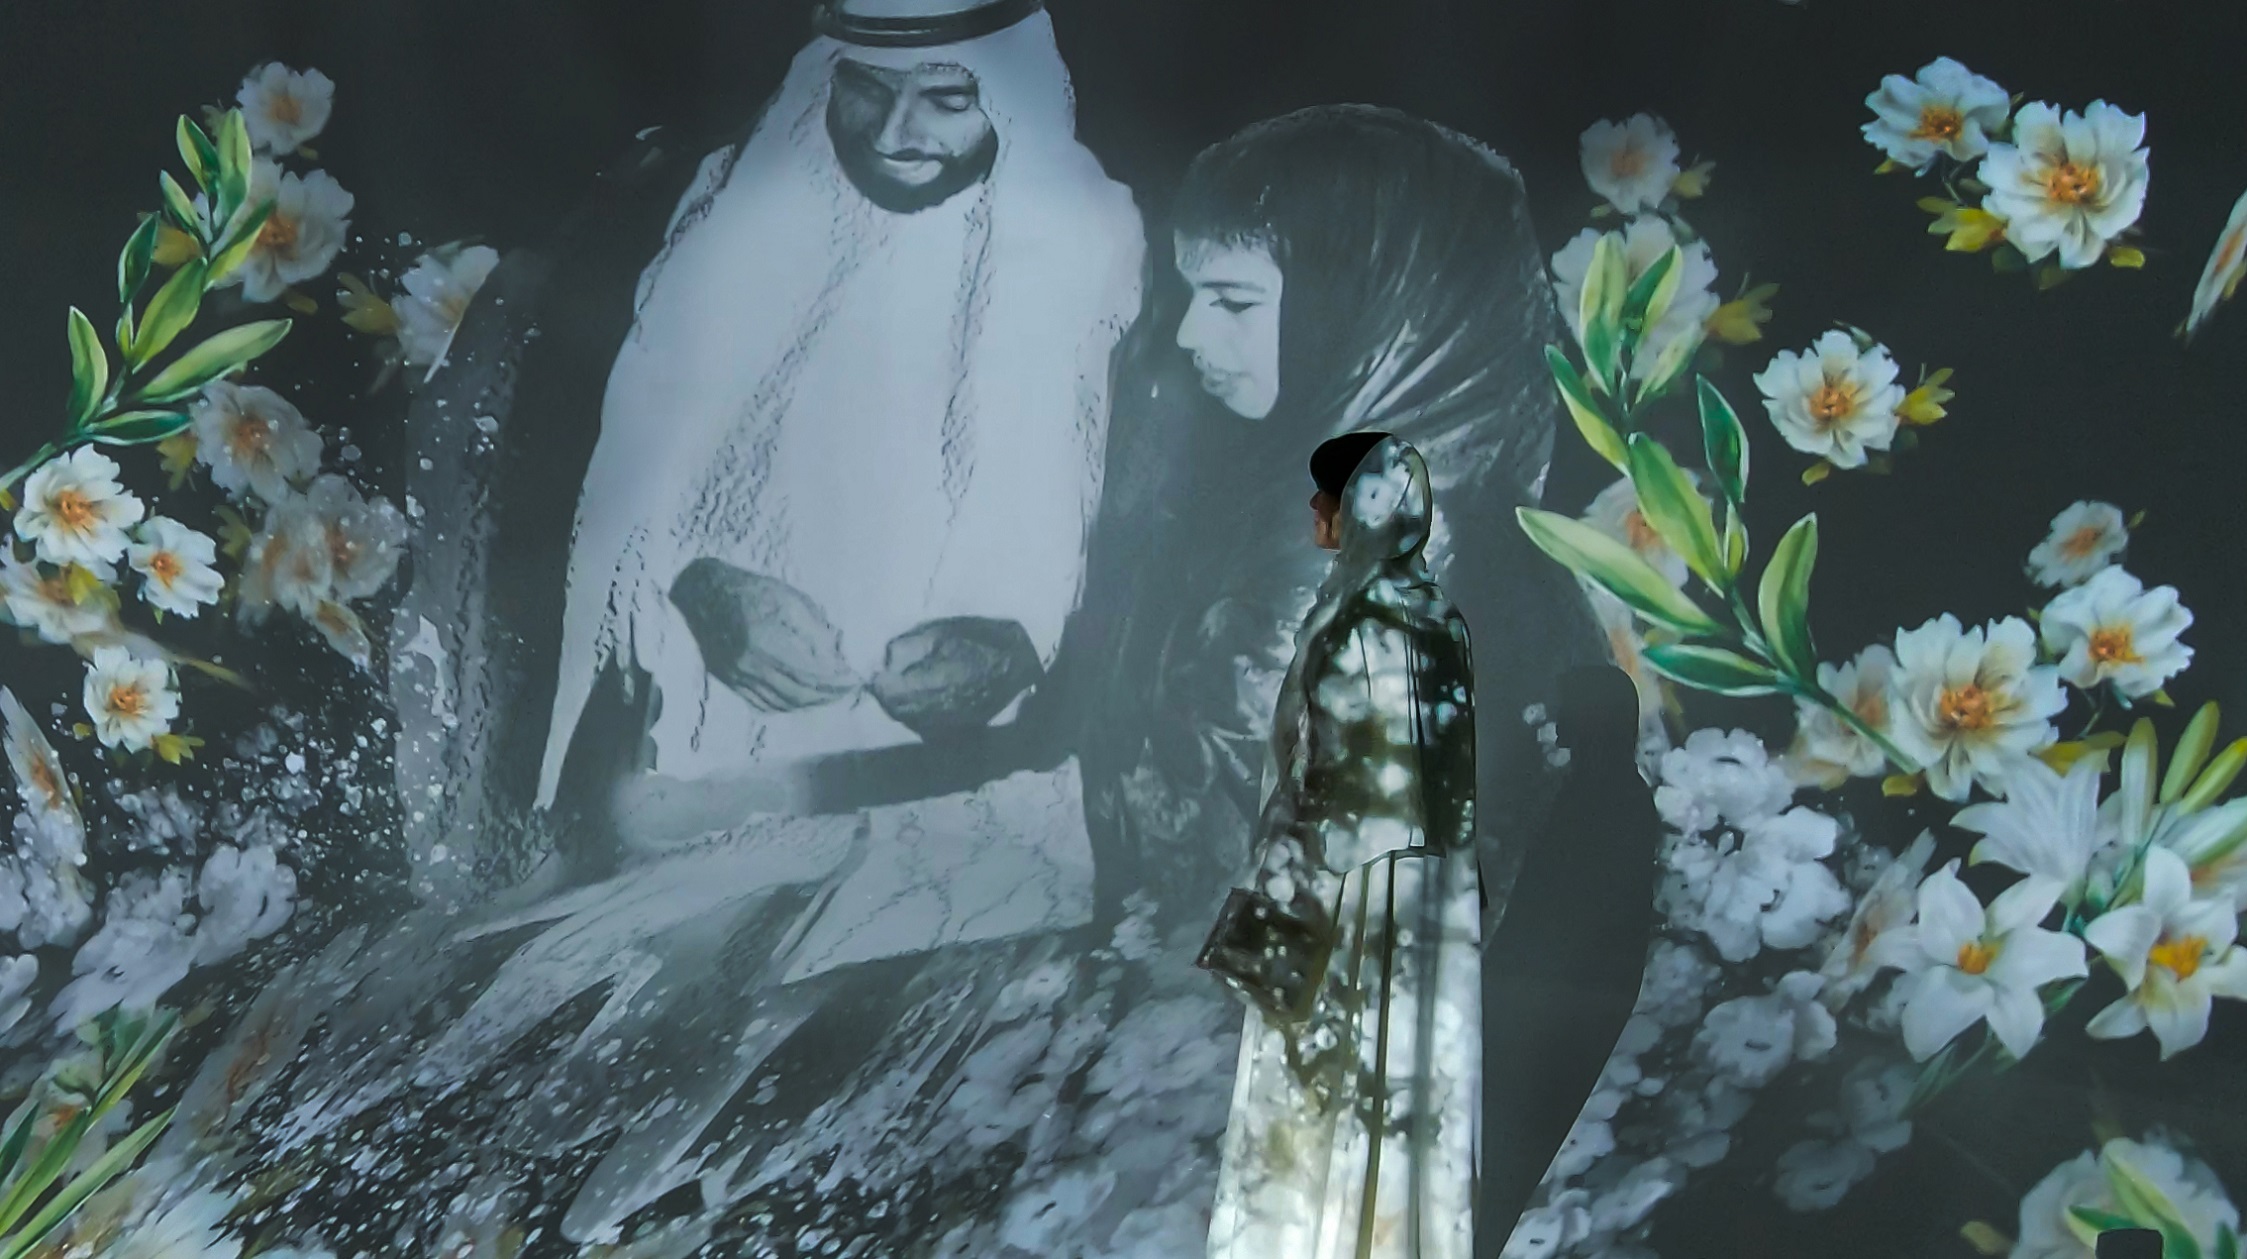  معرض فني رقمي للفنانة الإماراتية أشواق عبد الله